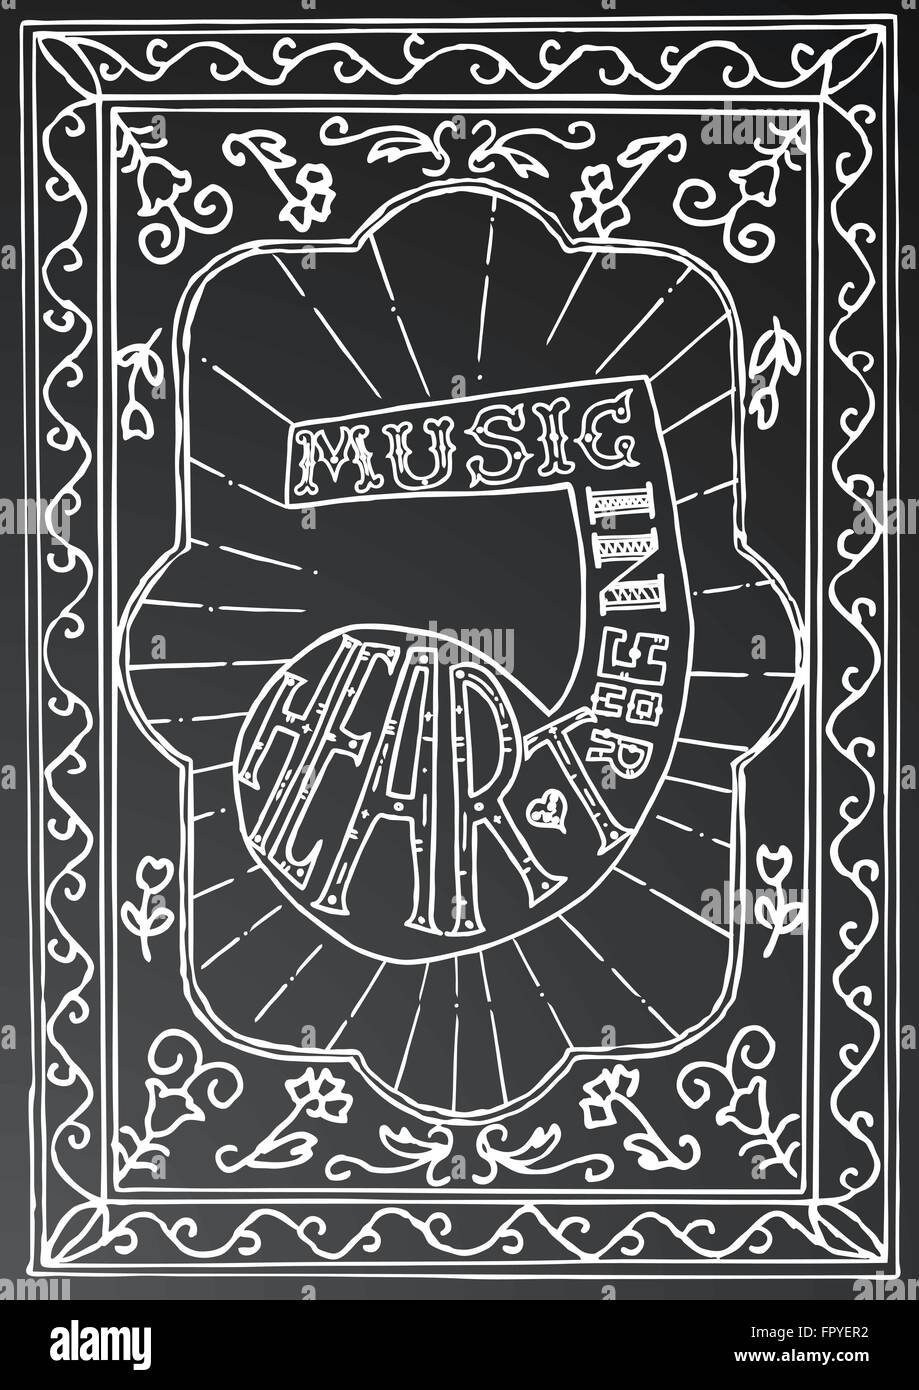 Musik in deinem Herzen. Handgezeichnete Schriftzug Design mit Musiknote und Rahmen auf schwarze Kreide an Bord. Typografie-Konzept für t-shirt Stock Vektor